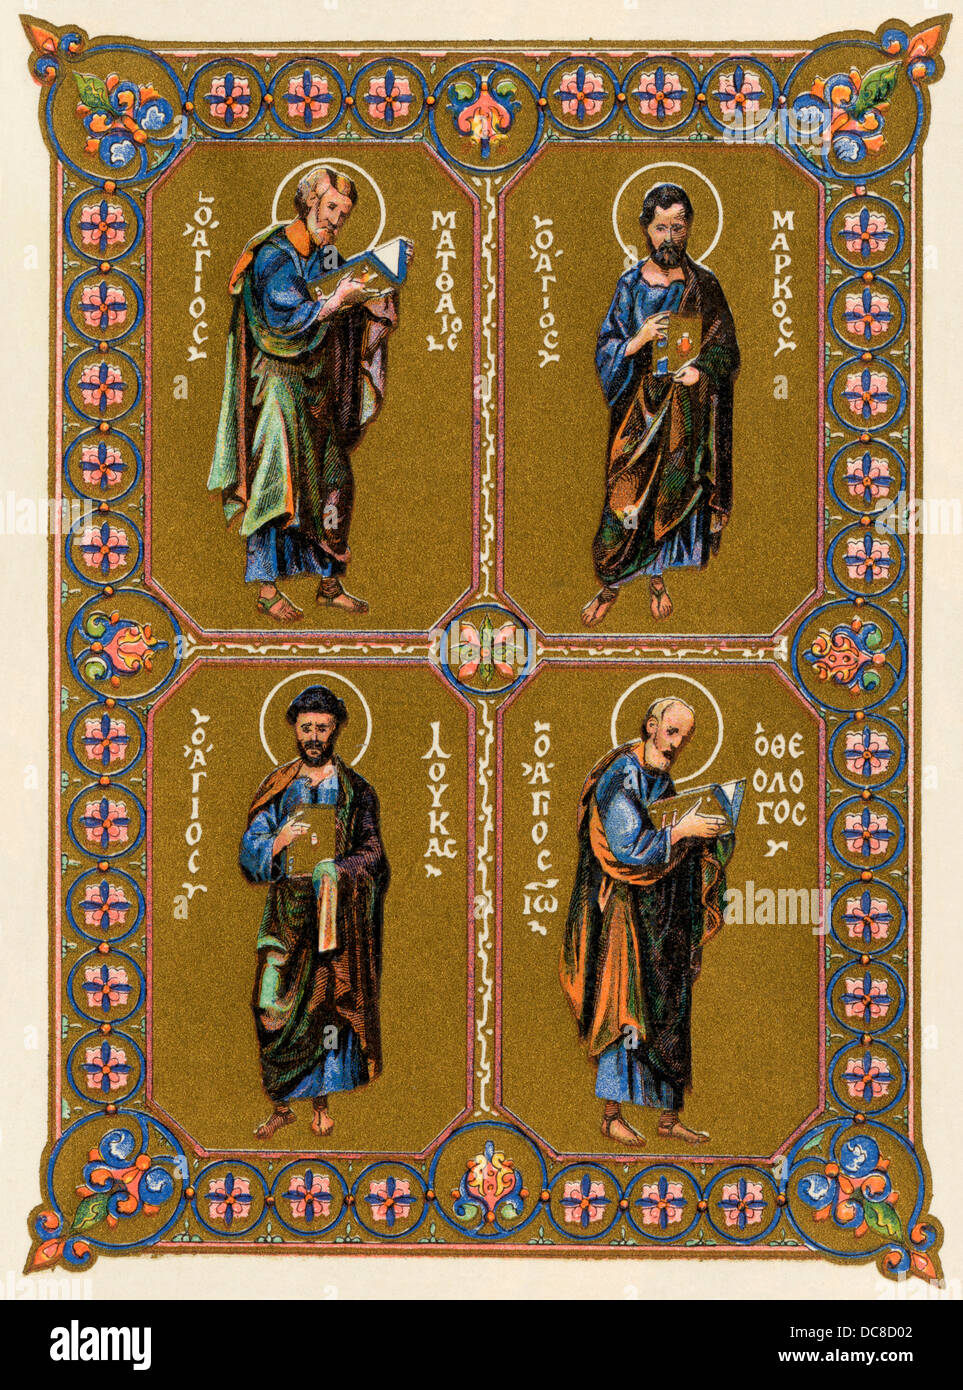 Evangelisten Matthäus, Markus, Lukas und Johannes in einem griechischen Miniatur aus dem 11. Jahrhundert dargestellt. Farblithographie Reproduktion Stockfoto